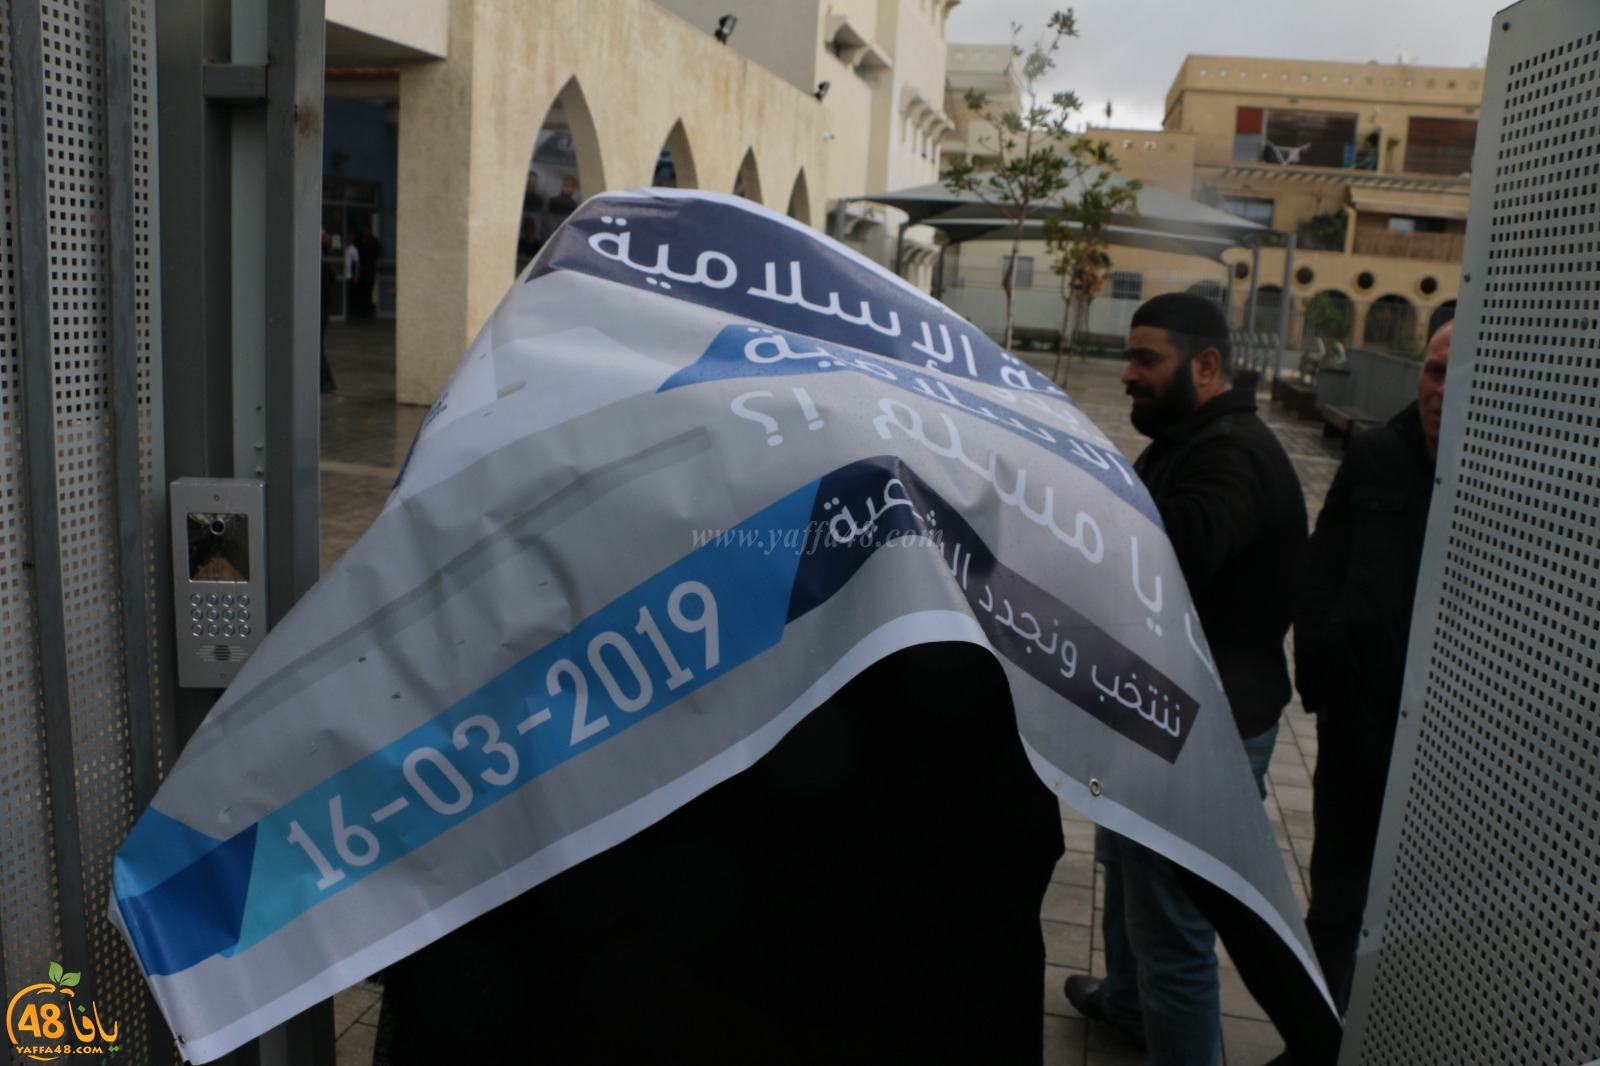  فيديو: استطلاع رأي الشارع اليافي حول انتخابات الهيئة الاسلامية للدورة الـ15